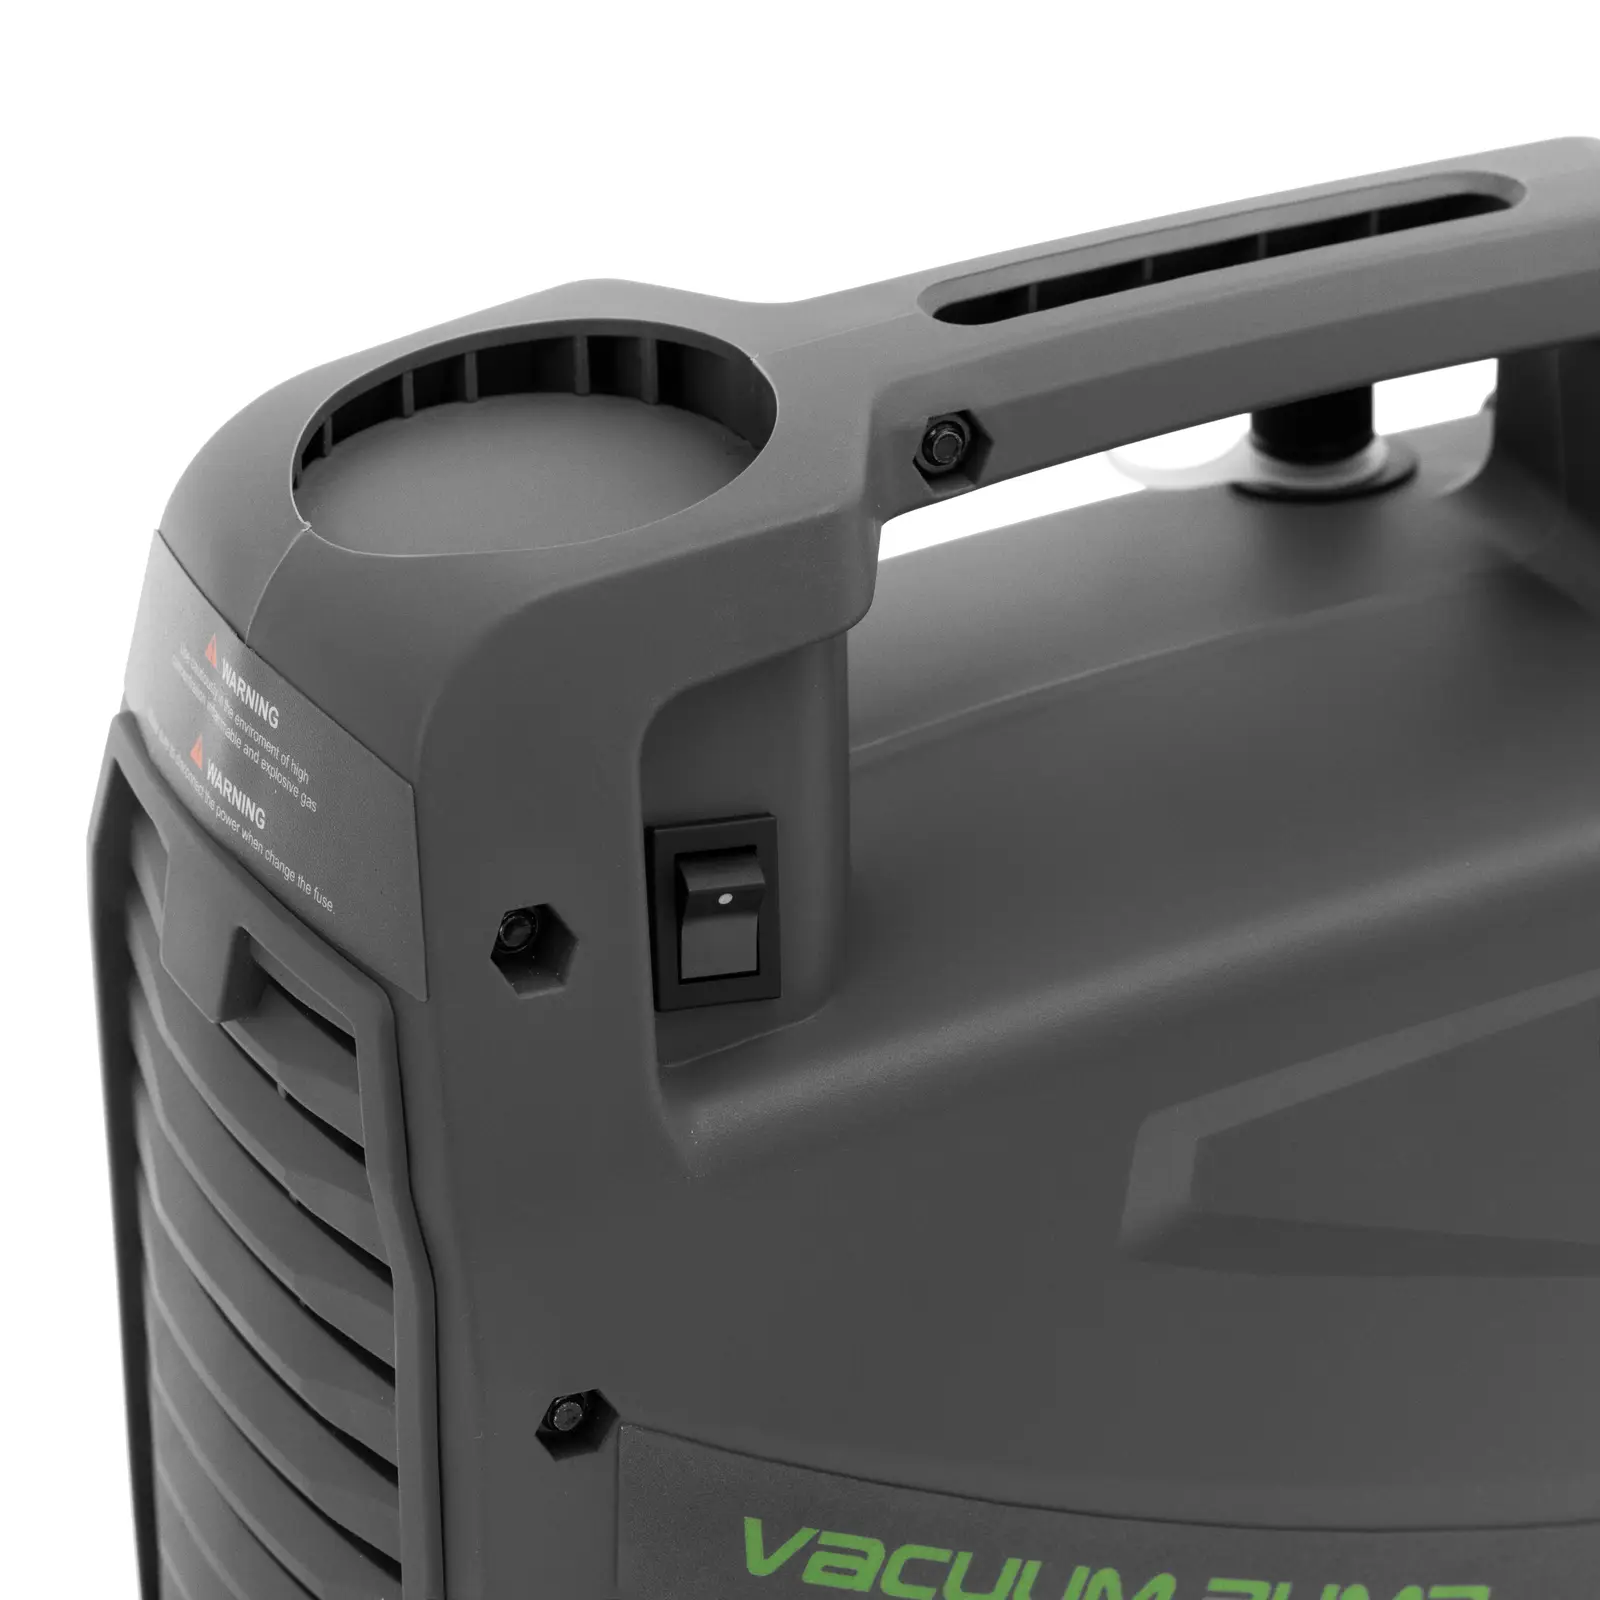 Vakuumpumpe Klimaanlage - für brennbare Kältemittel - 186 W - zweistufiges Design